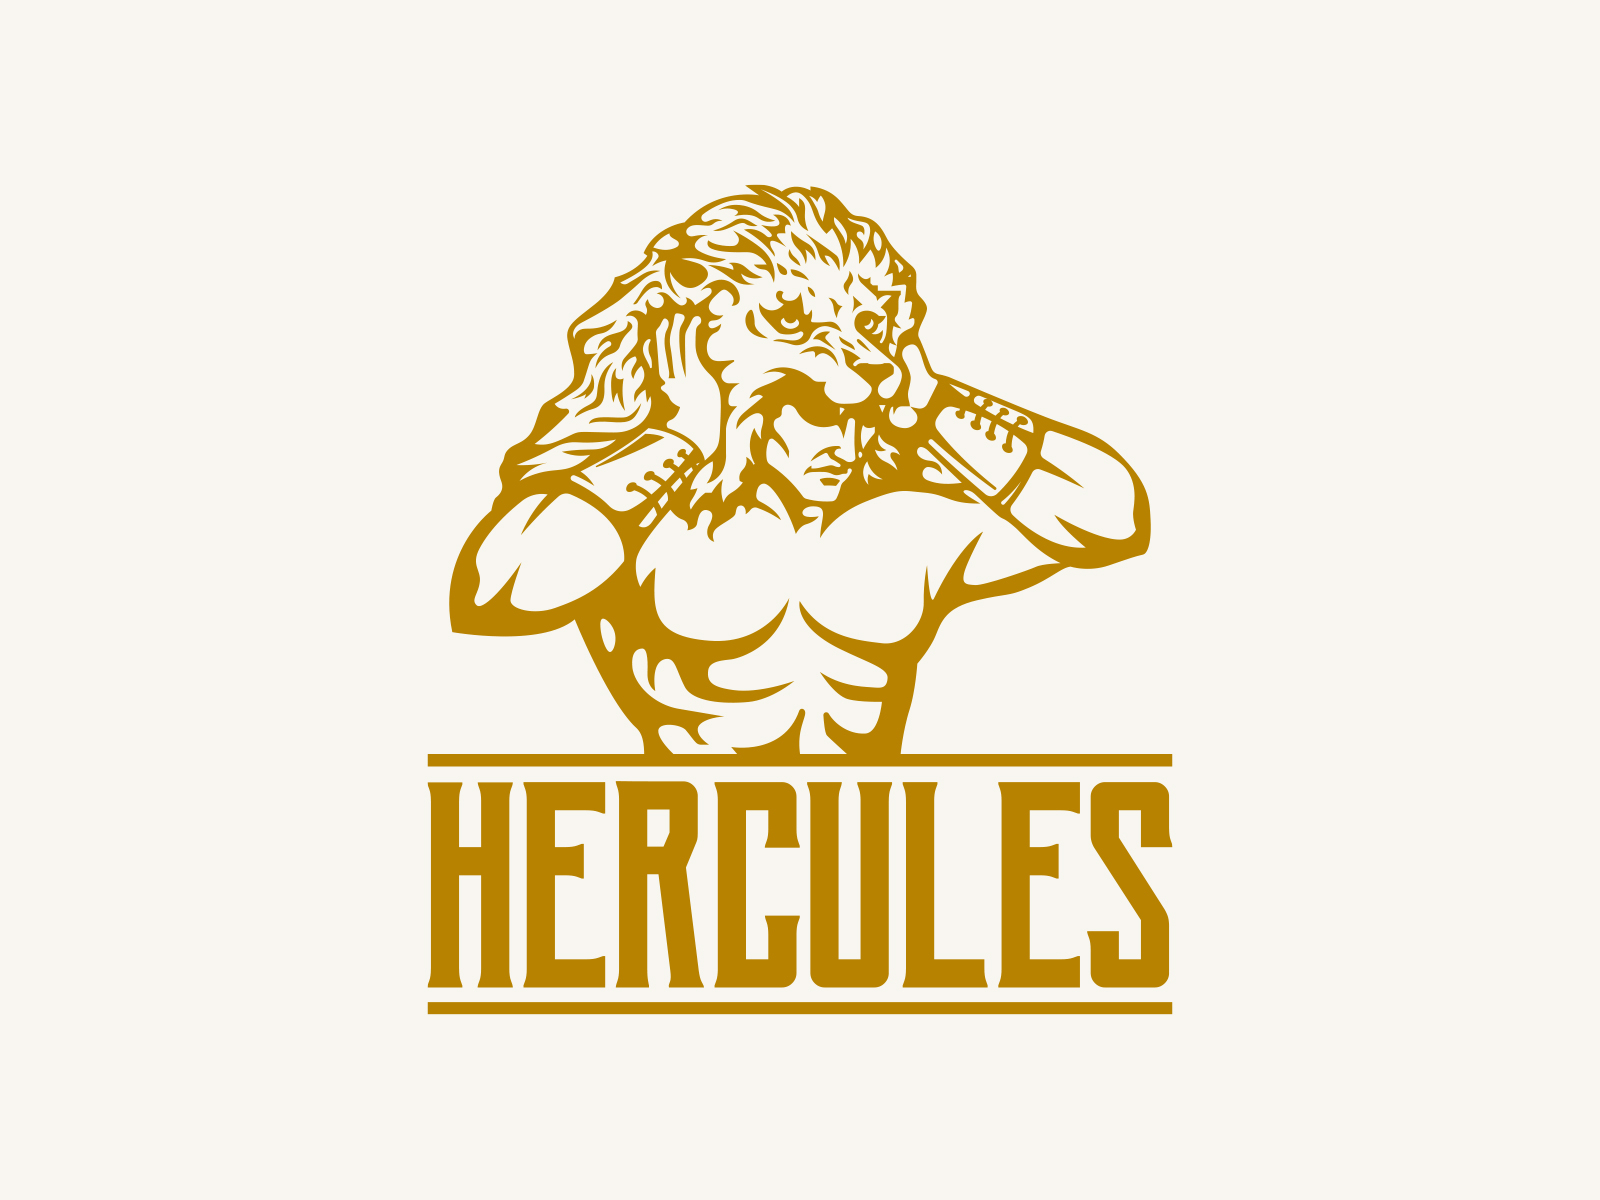 Hercules Bikes - Hercules Bikes added a new photo.